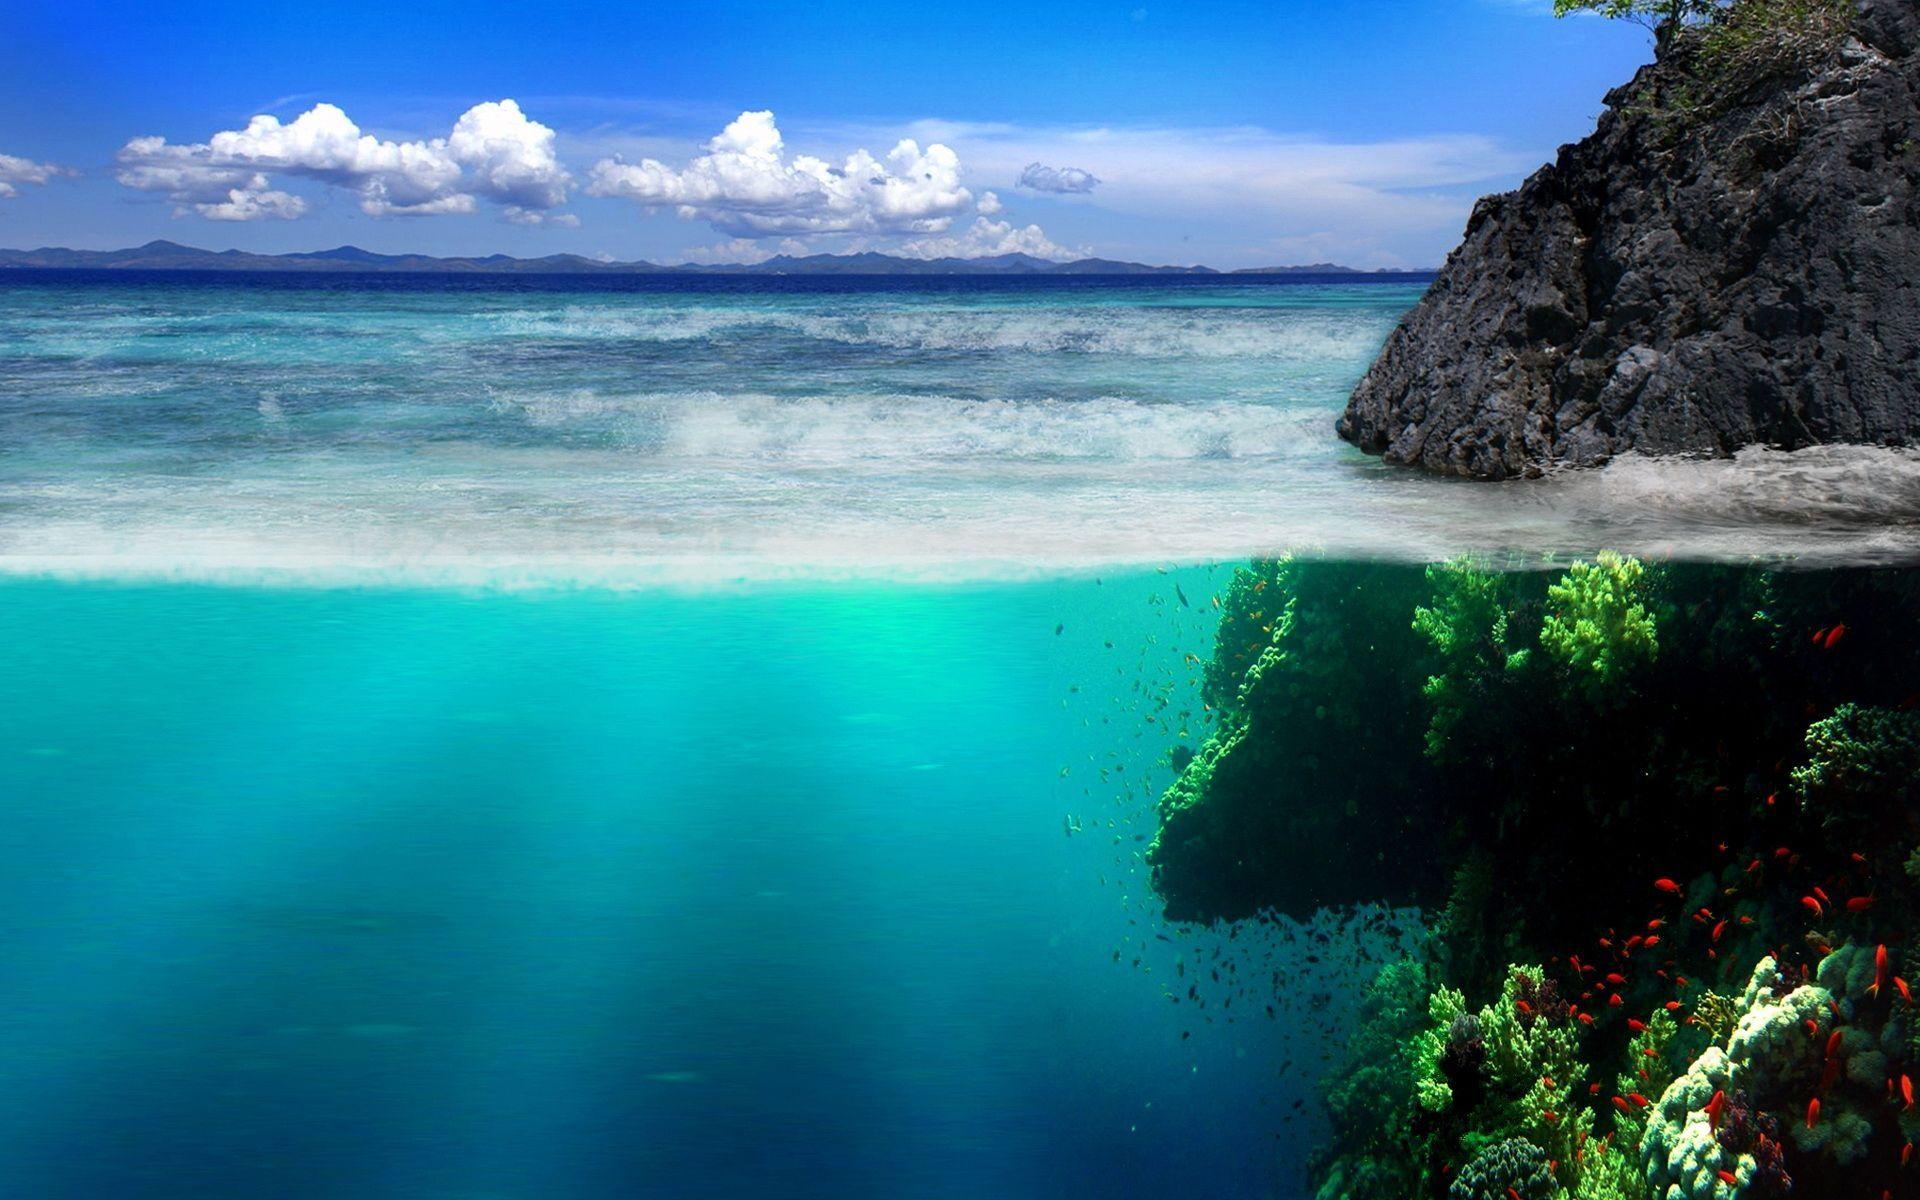 Ocean Landscape Wallpaper High Definition #PC4. Earth. Ocean